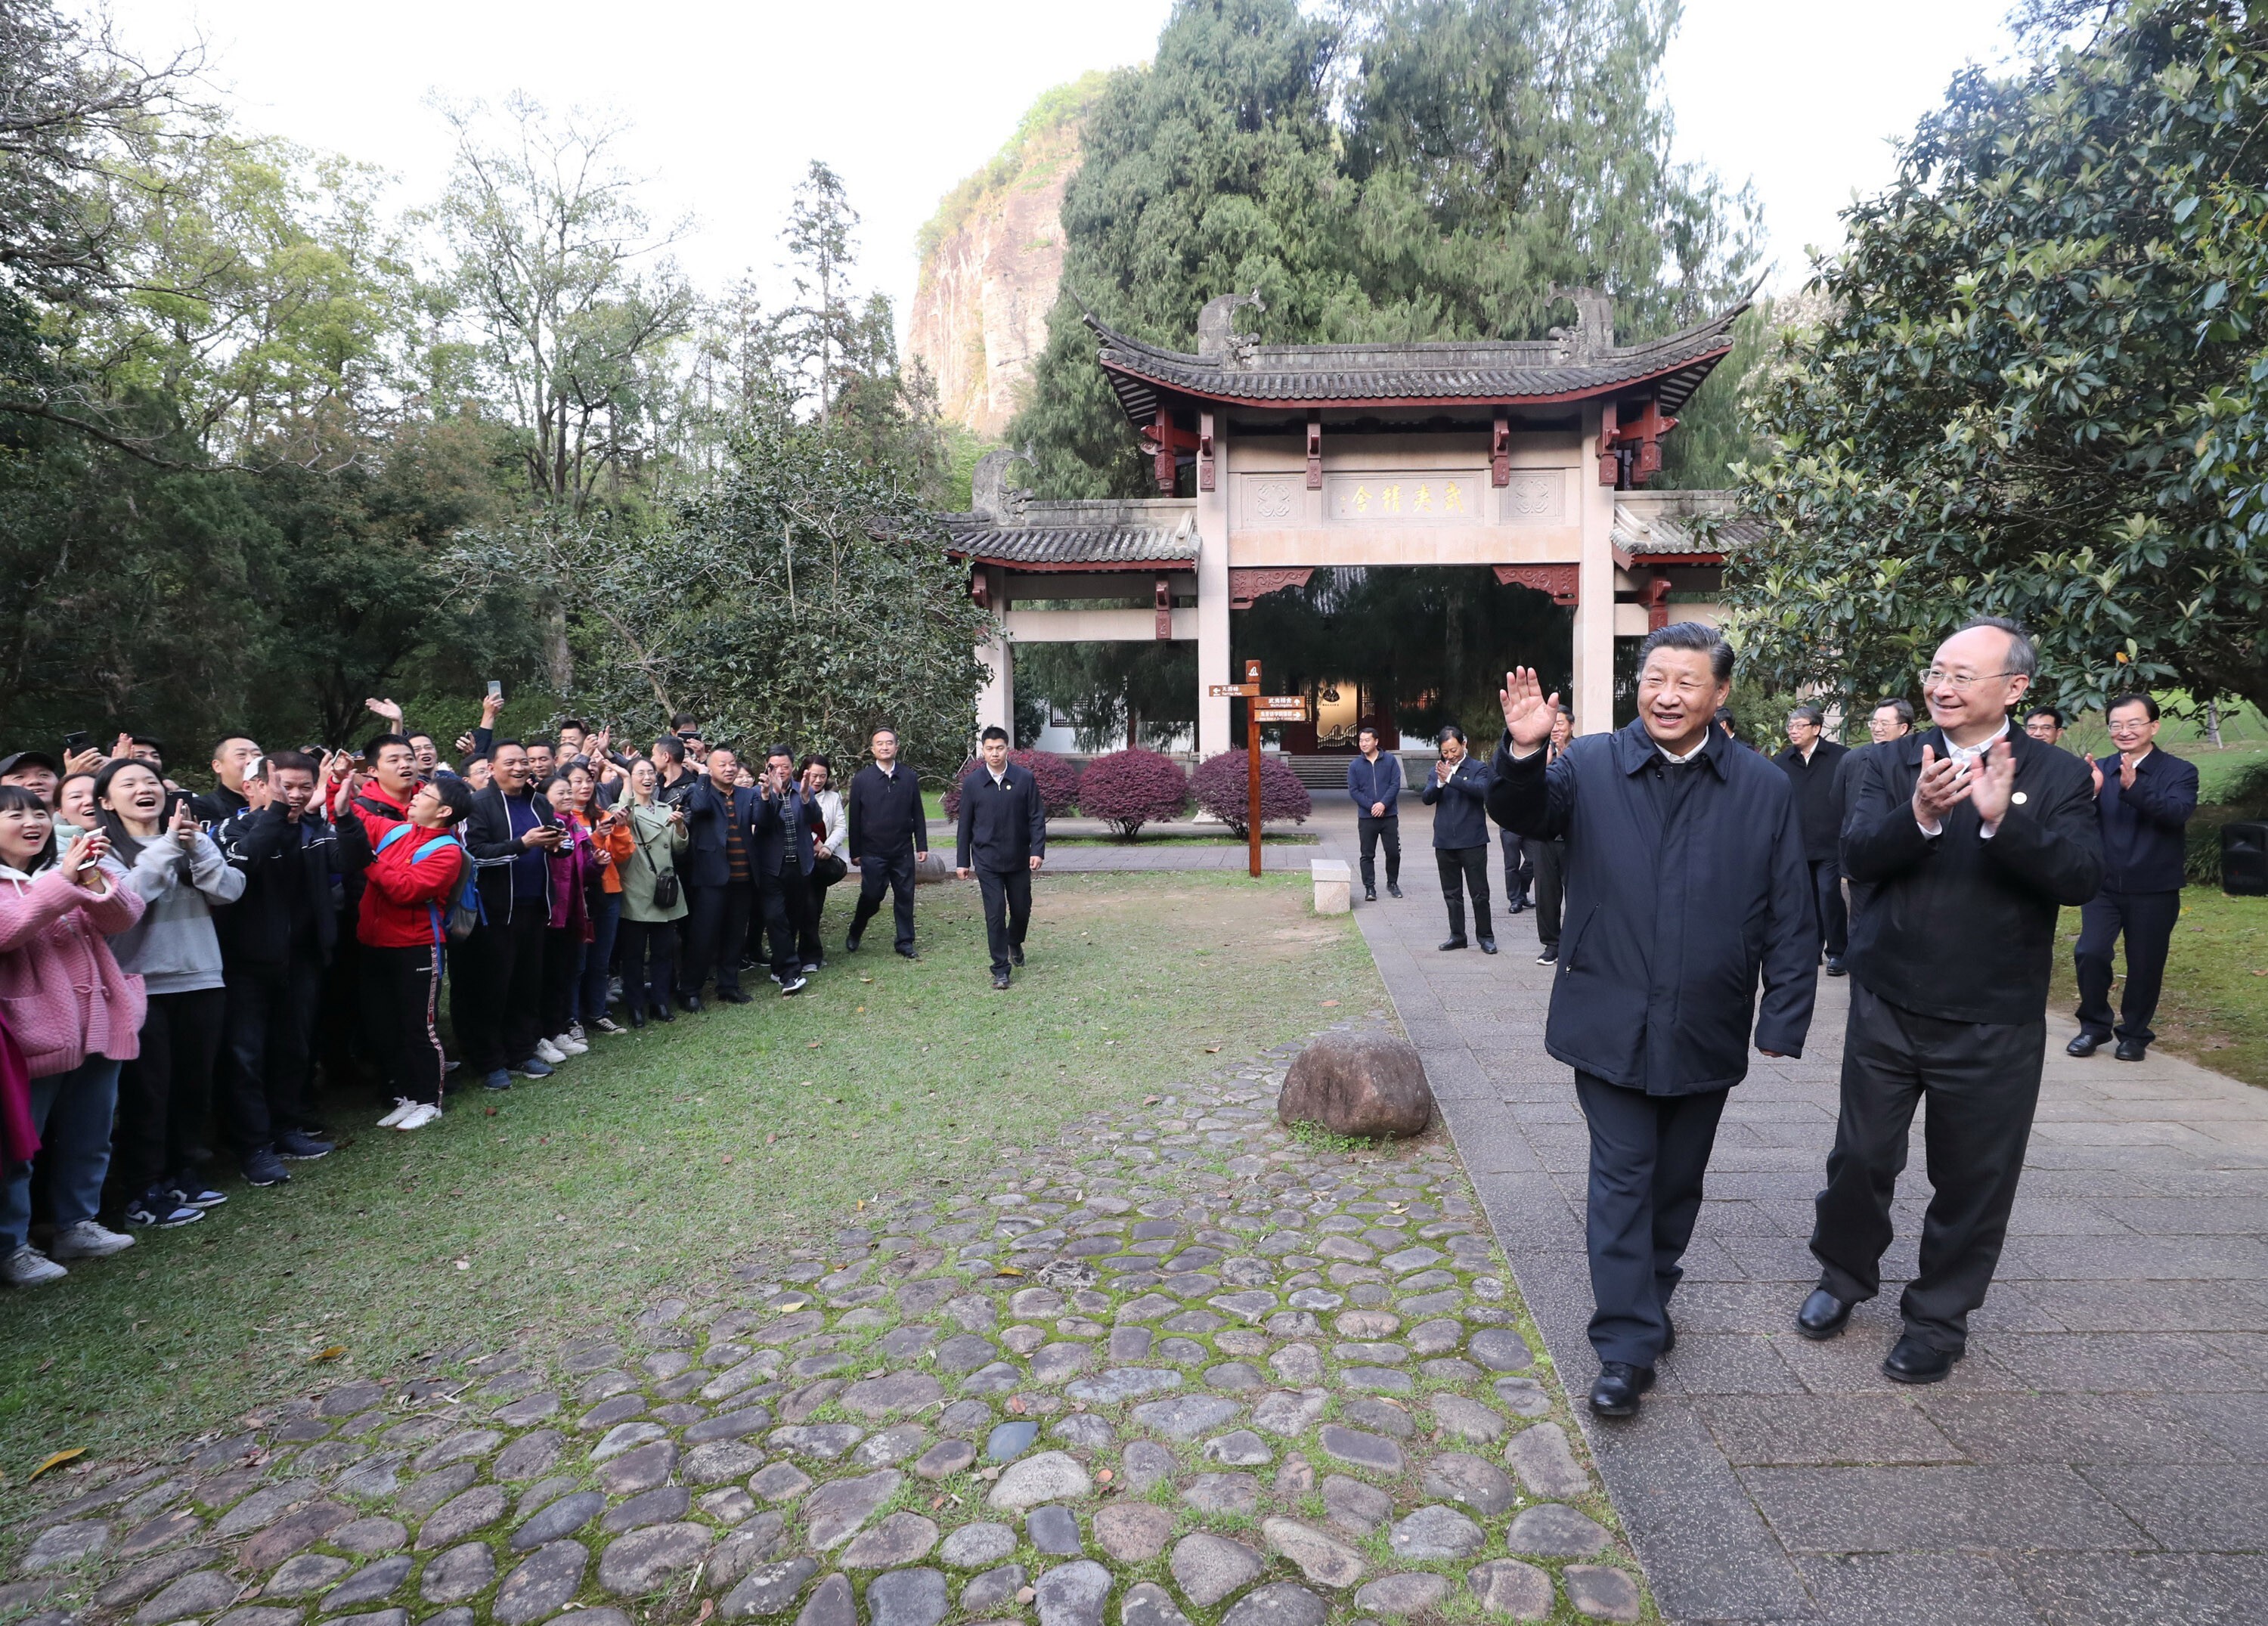 President Xi Jinping visits a park in Fujian dedicated to philosopher Zhu Xi. Photo: Xinhua